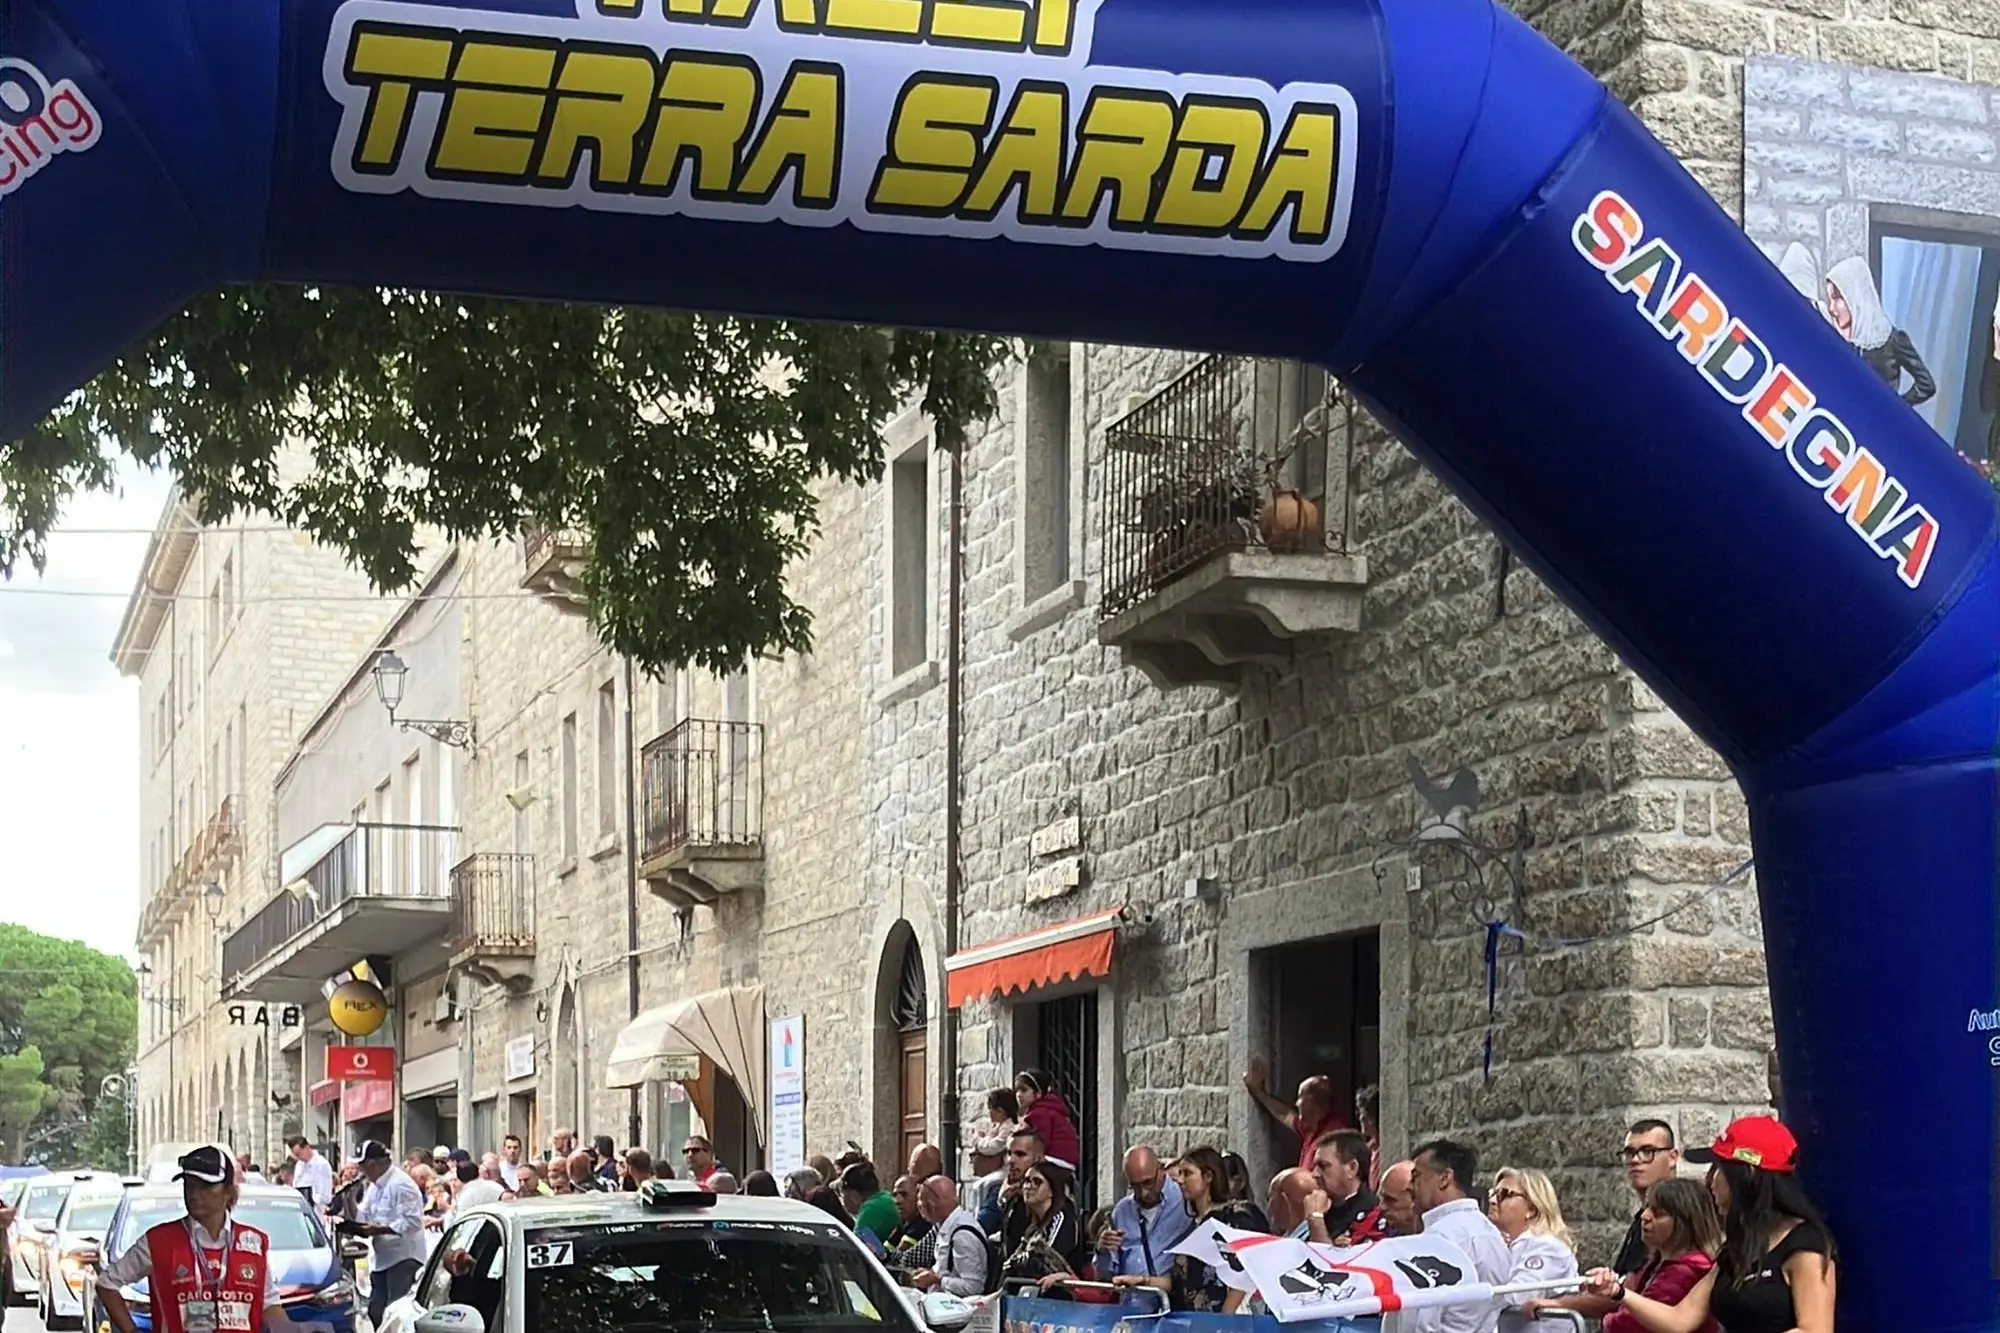 La partenza della Rally Terra Sarda 2022 (foto Vanna Chessa)